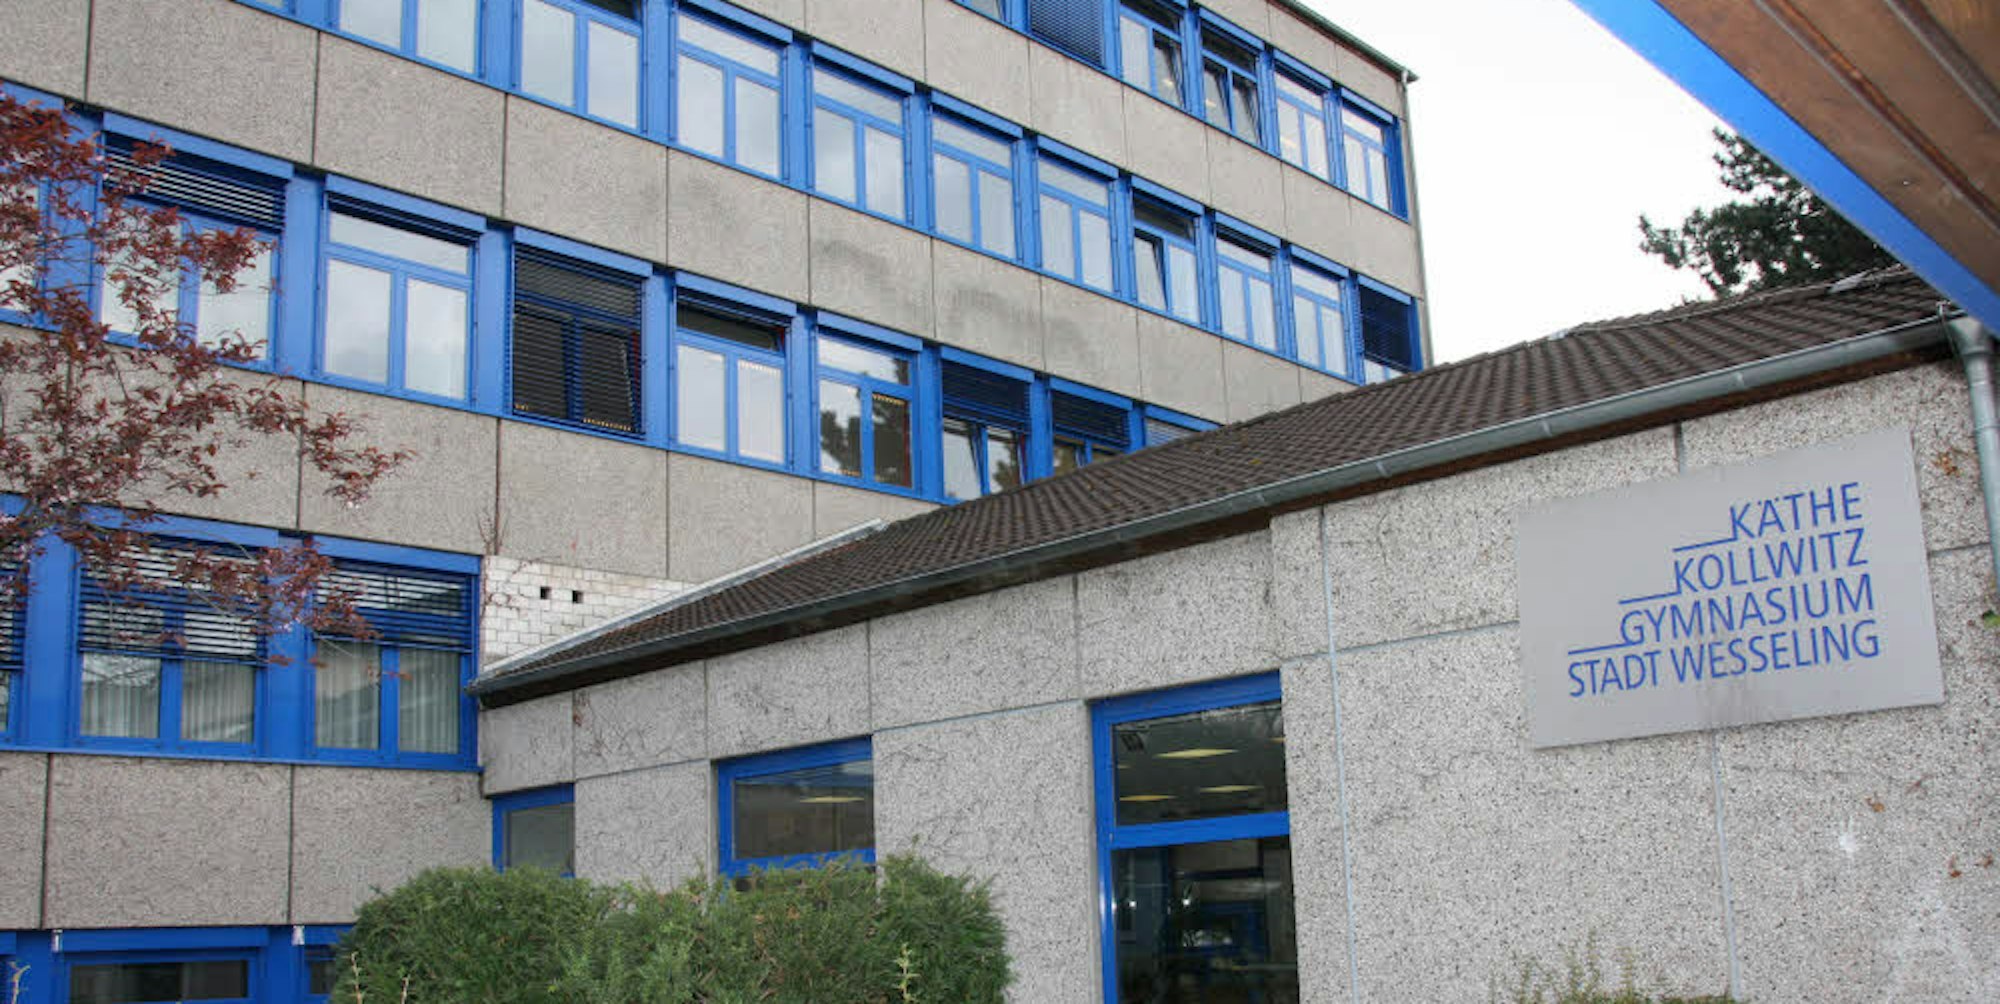 Im Käthe-Kollwitz-Gymnasium wurden Werte gemessen, die über dem Grenzwert liegen.